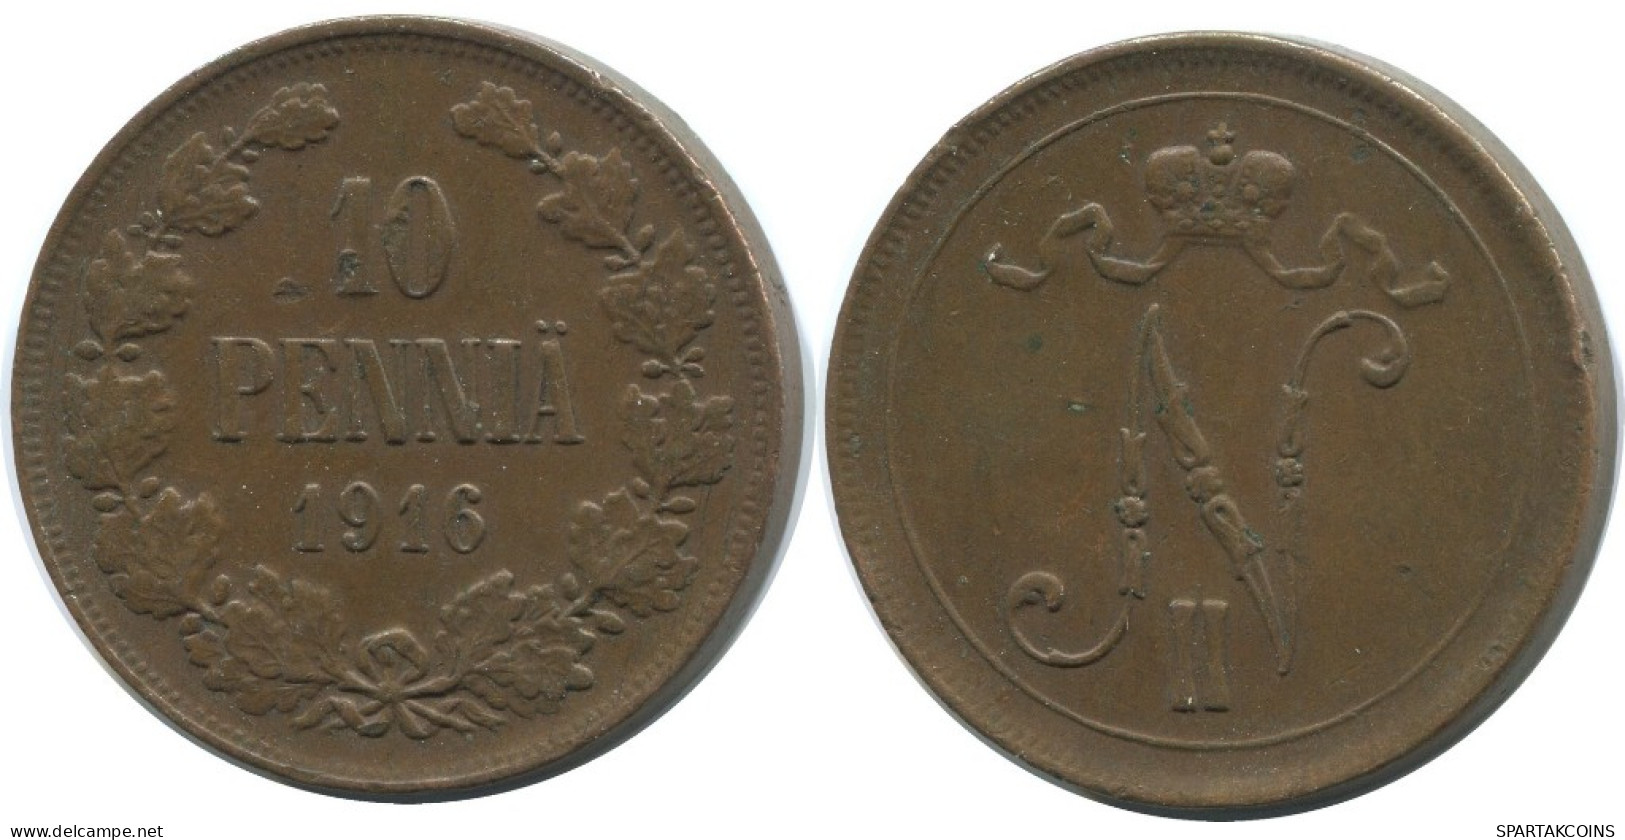 10 PENNIA 1916 FINLAND Coin RUSSIA EMPIRE #AB128.5.U.A - Finland